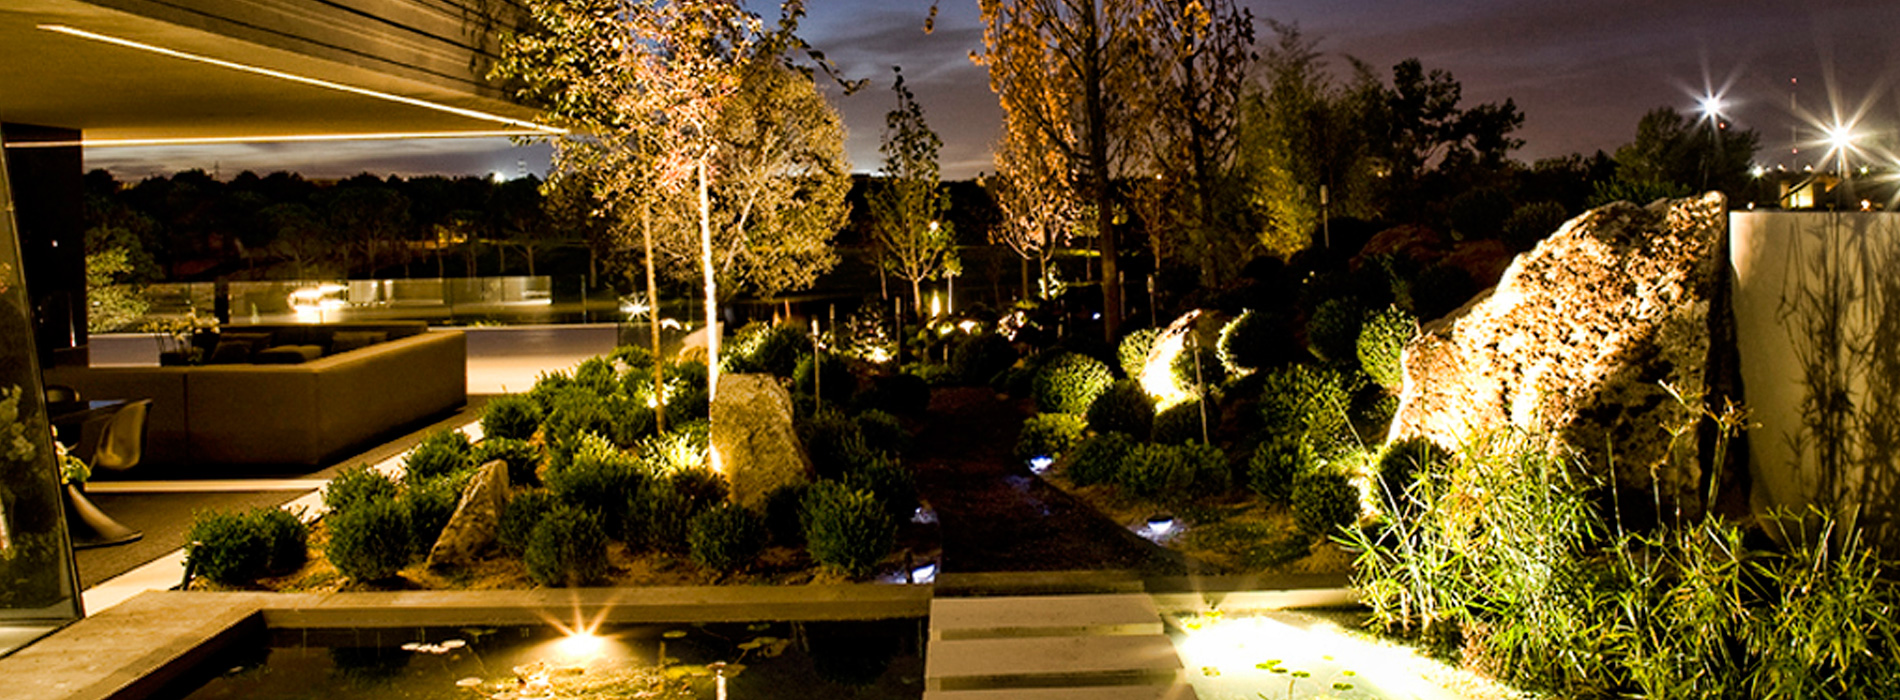 Lumipro Focos Para Jardin Iluminacion De Exterior Iluminacion Led Para Jardin Luces Para Jardin Mexico Iluminacion En Monterrey Mexico